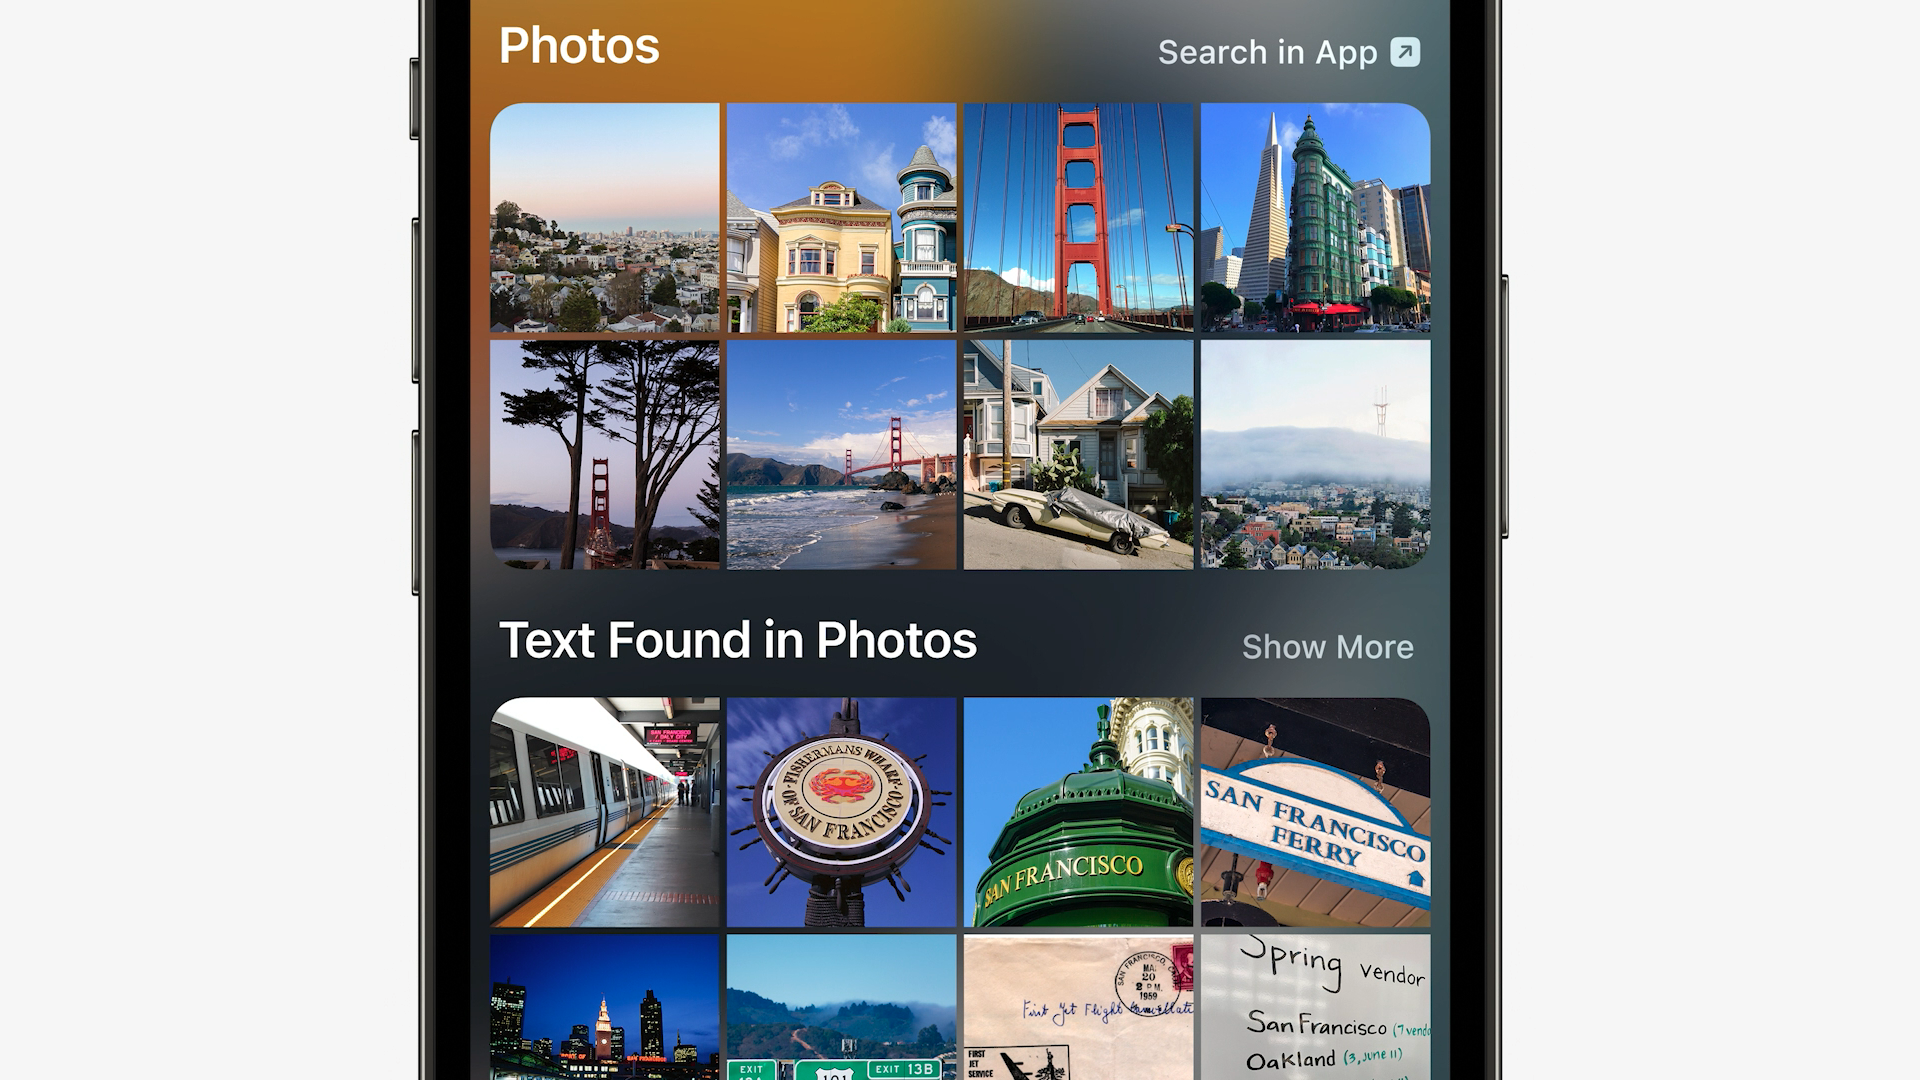 The improved Photos app for iOS 15